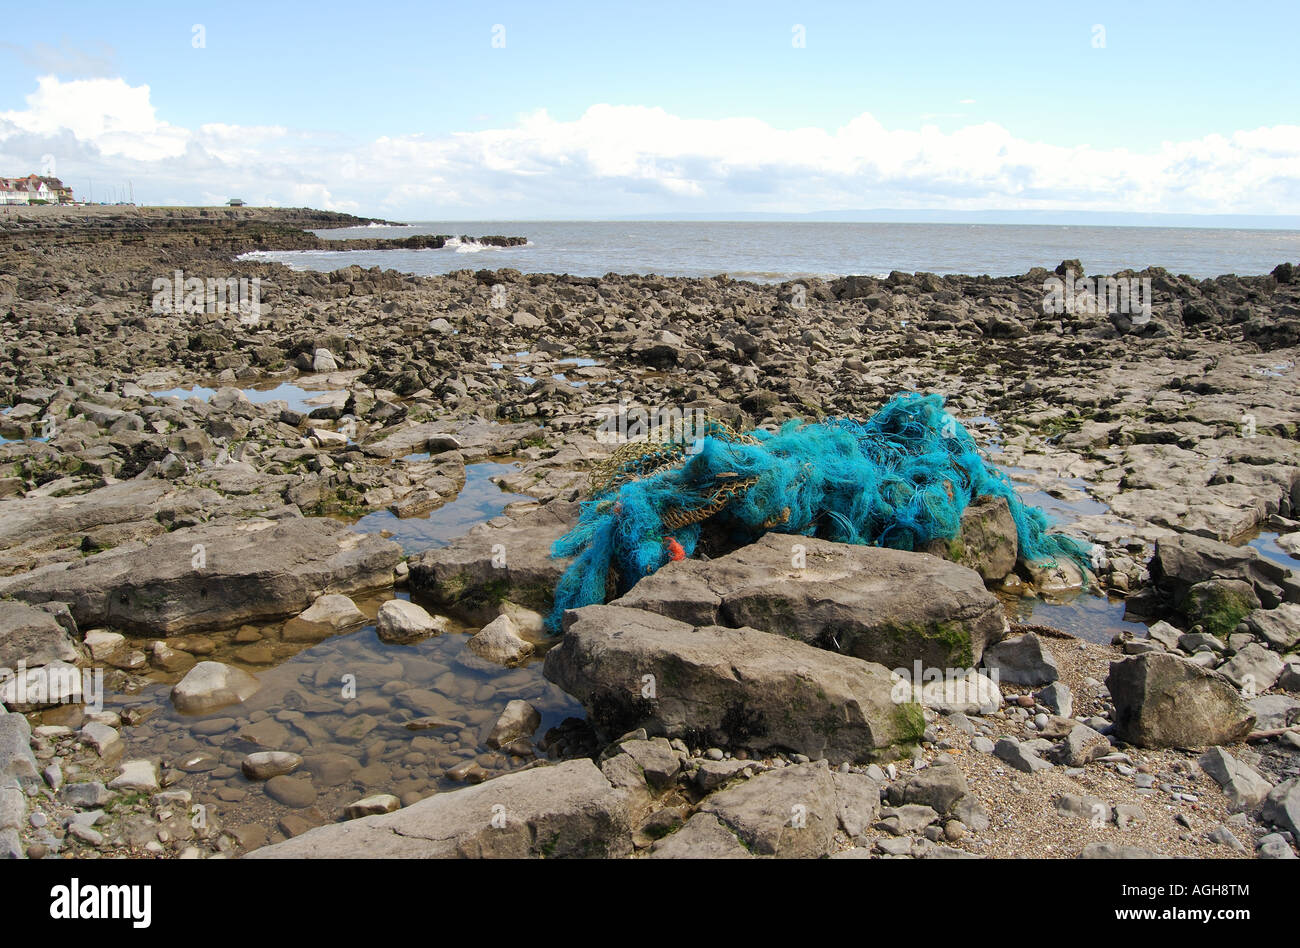 Les plastiques de filet de pêche accroché sur les roches nombre 2519 Banque D'Images